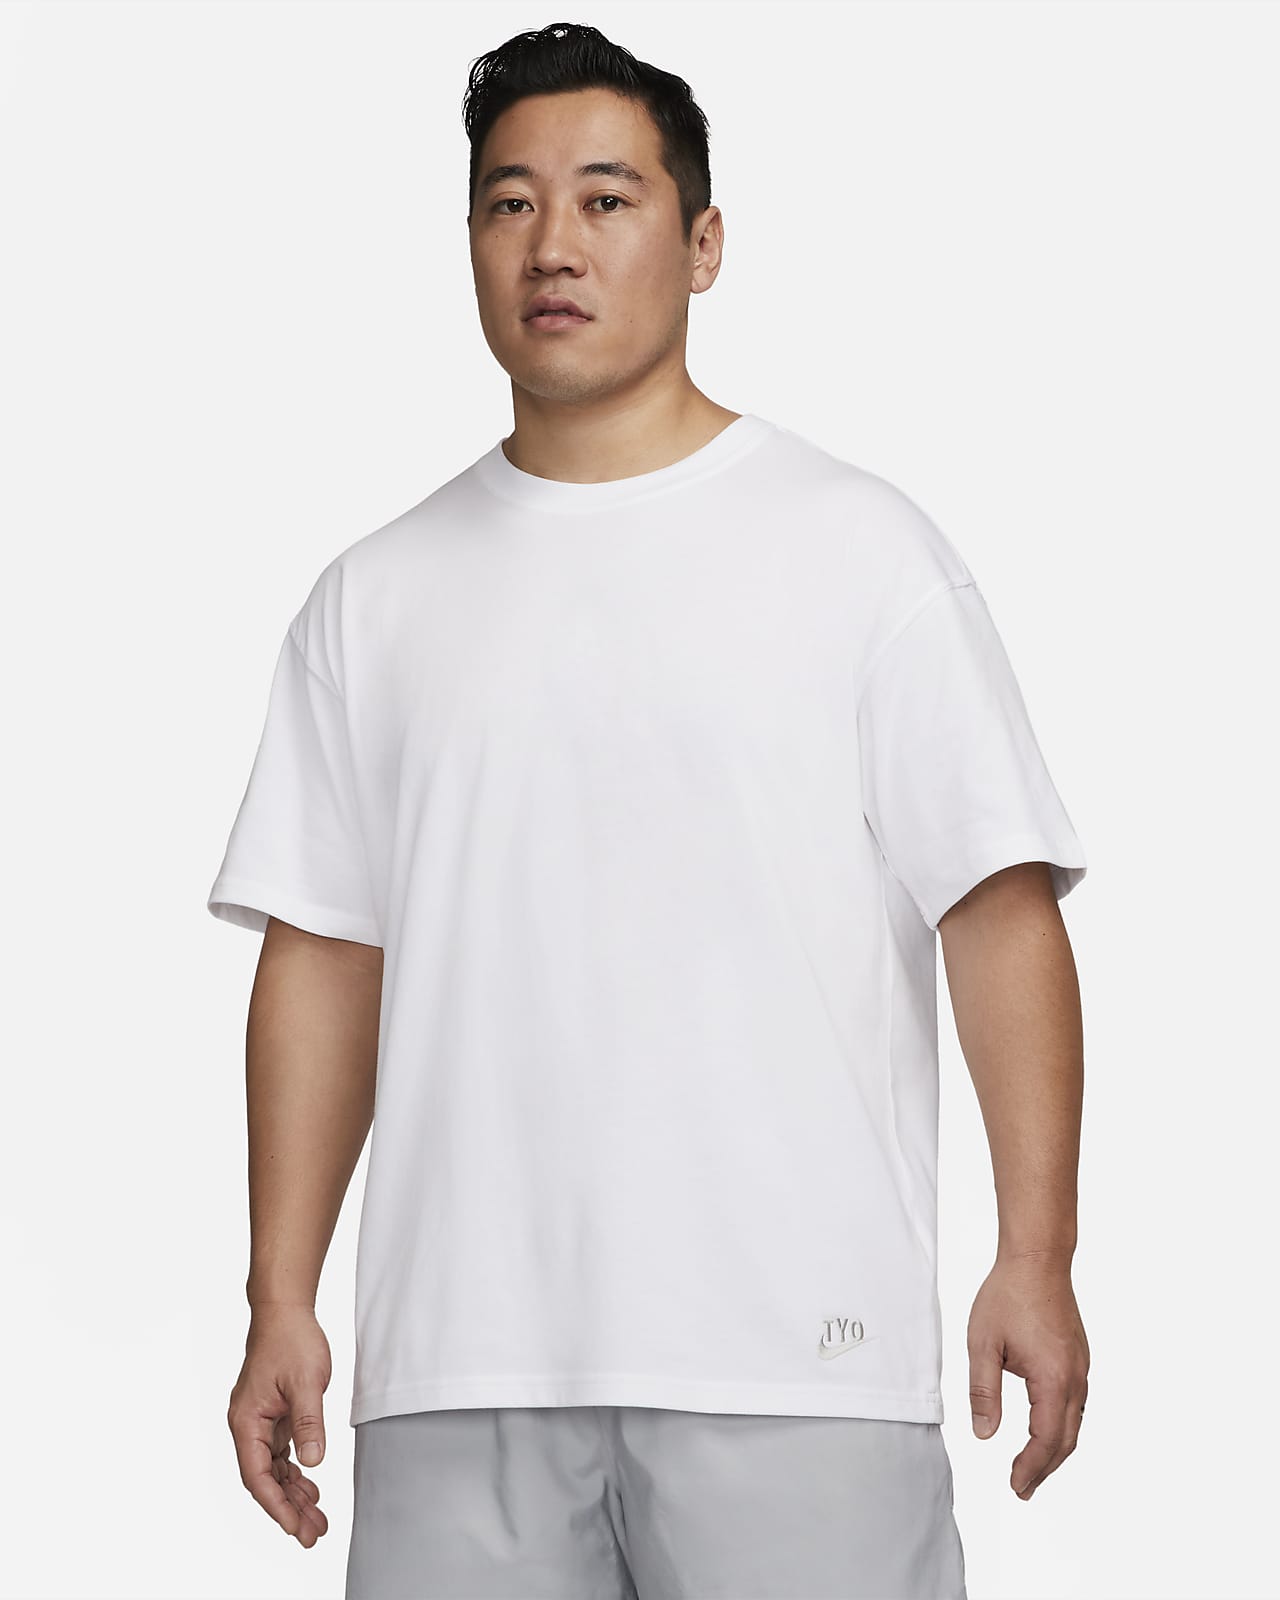 NIKE公式】ナイキ スポーツウェア メンズ Max90 Tシャツ.オンラインストア (通販サイト)